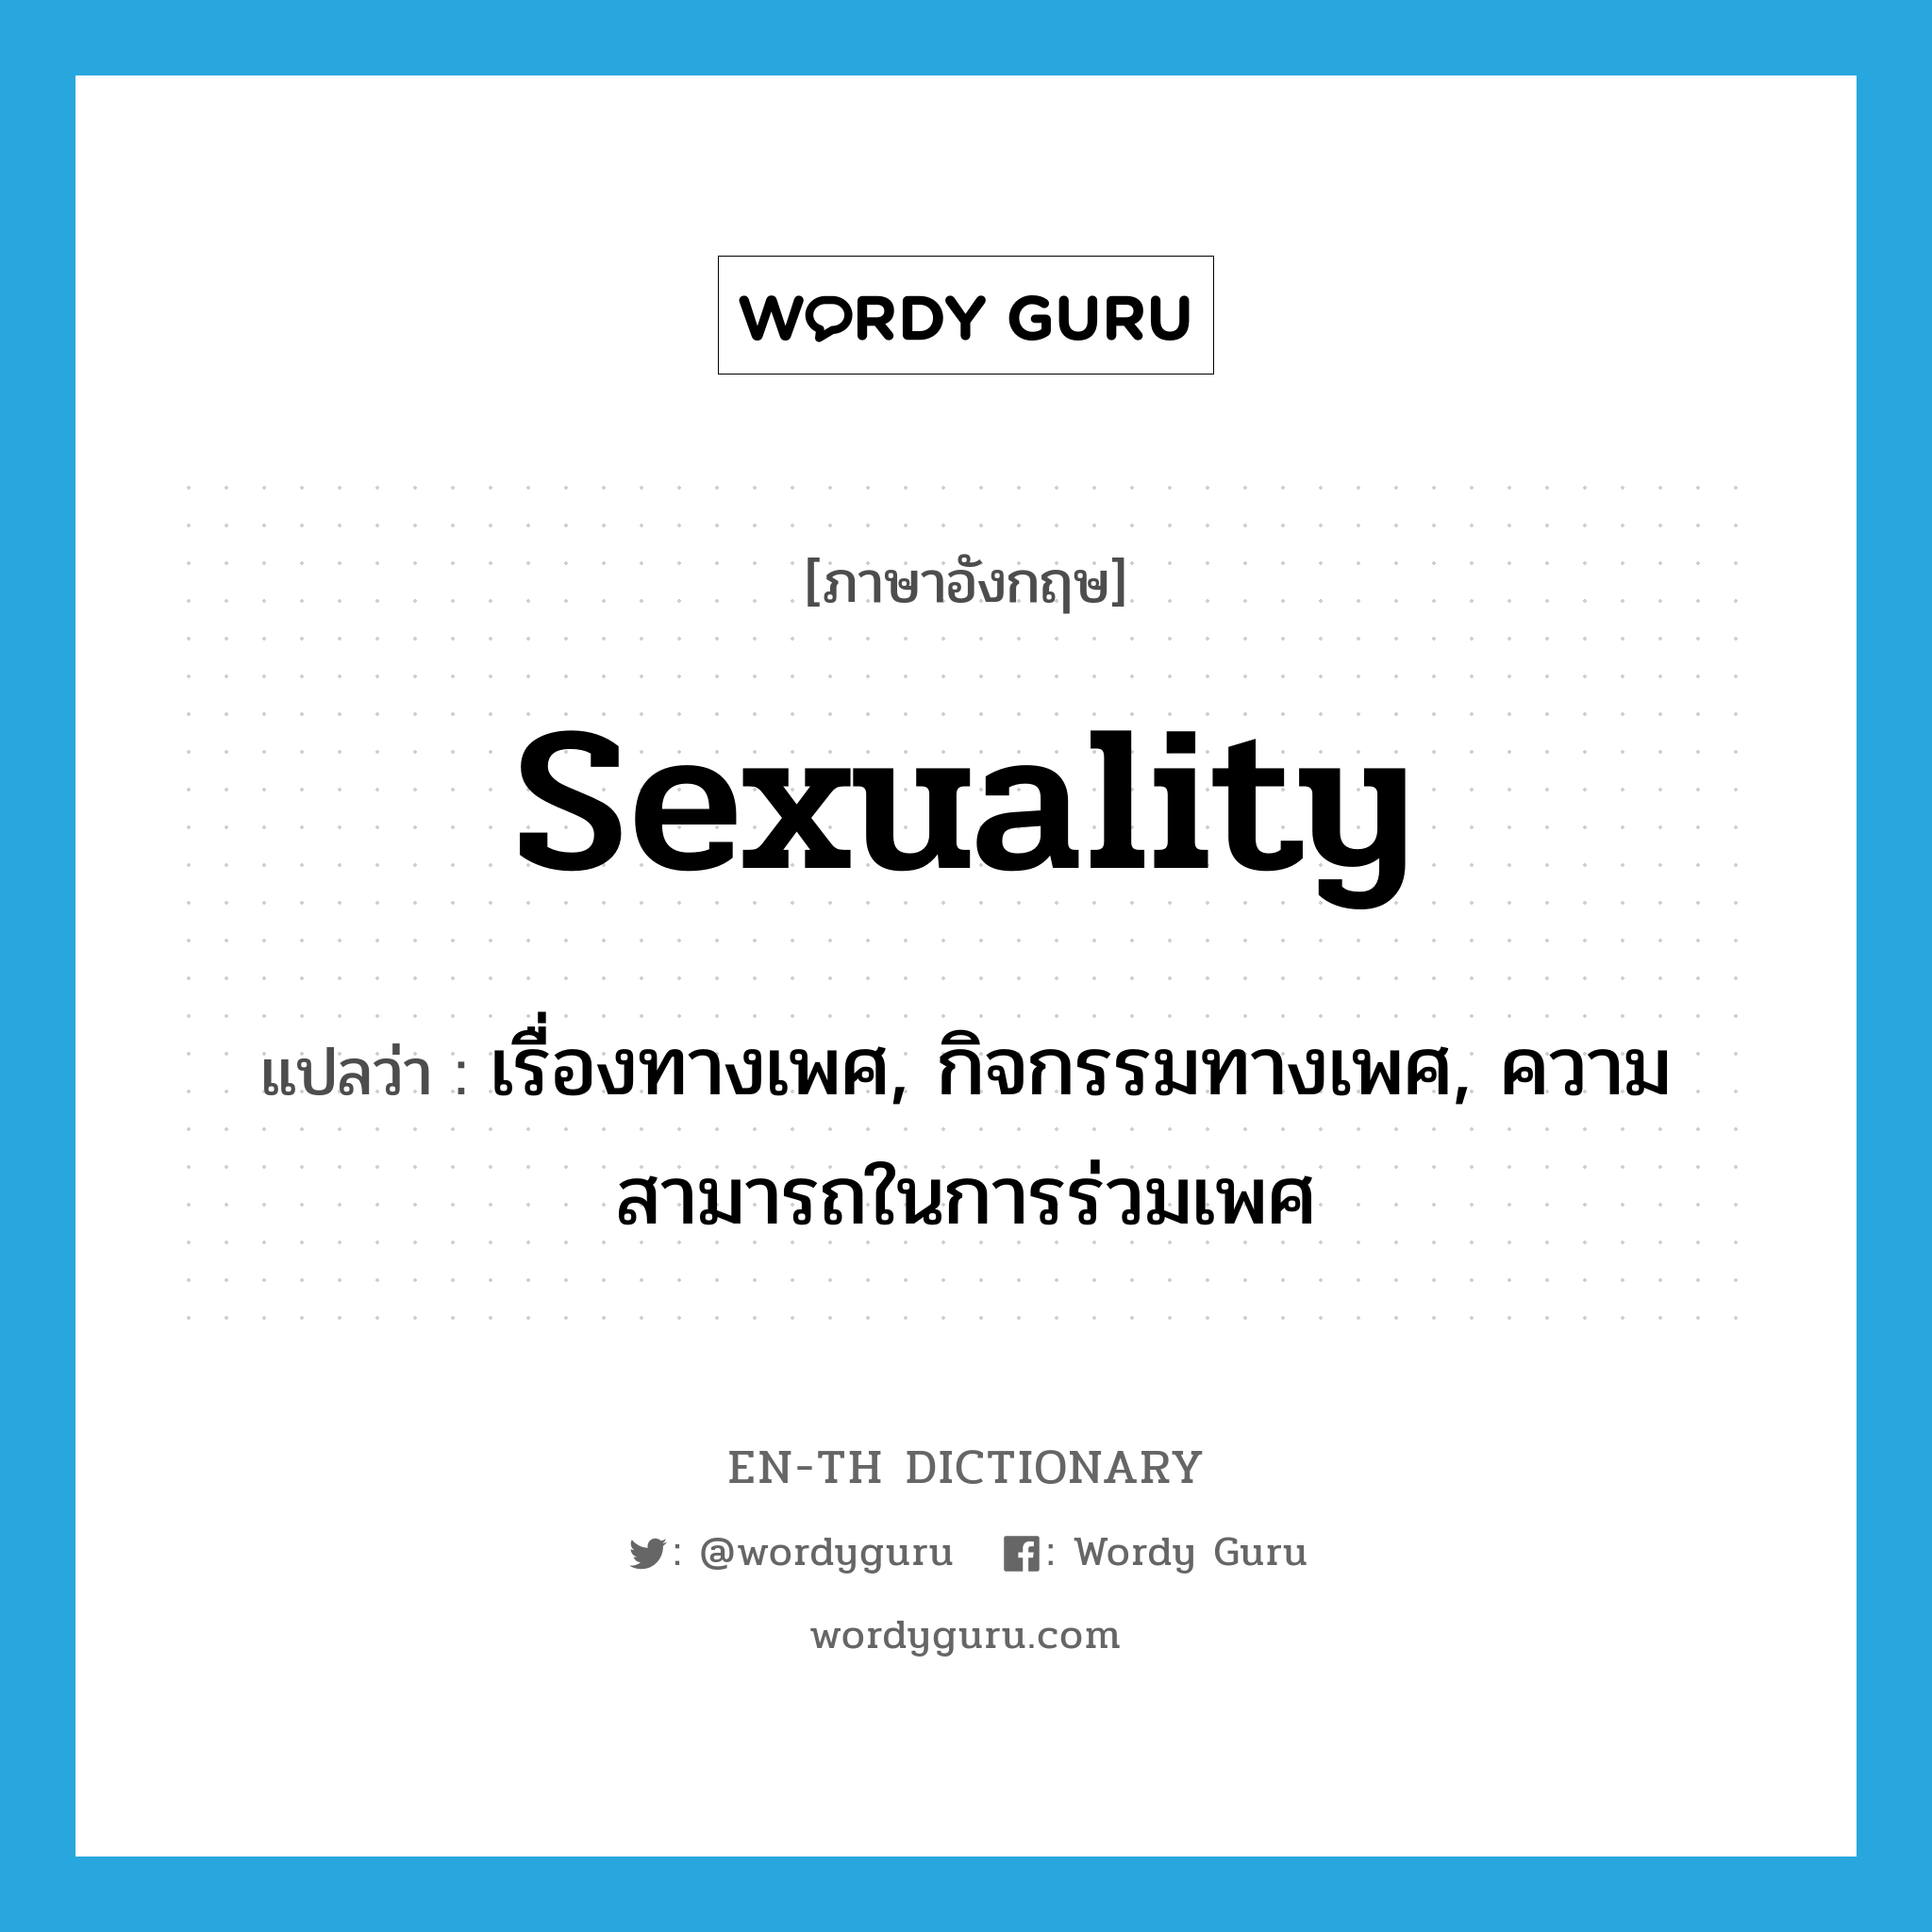 เรื่องทางเพศ, กิจกรรมทางเพศ, ความสามารถในการร่วมเพศ ภาษาอังกฤษ?, คำศัพท์ภาษาอังกฤษ เรื่องทางเพศ, กิจกรรมทางเพศ, ความสามารถในการร่วมเพศ แปลว่า sexuality ประเภท N หมวด N